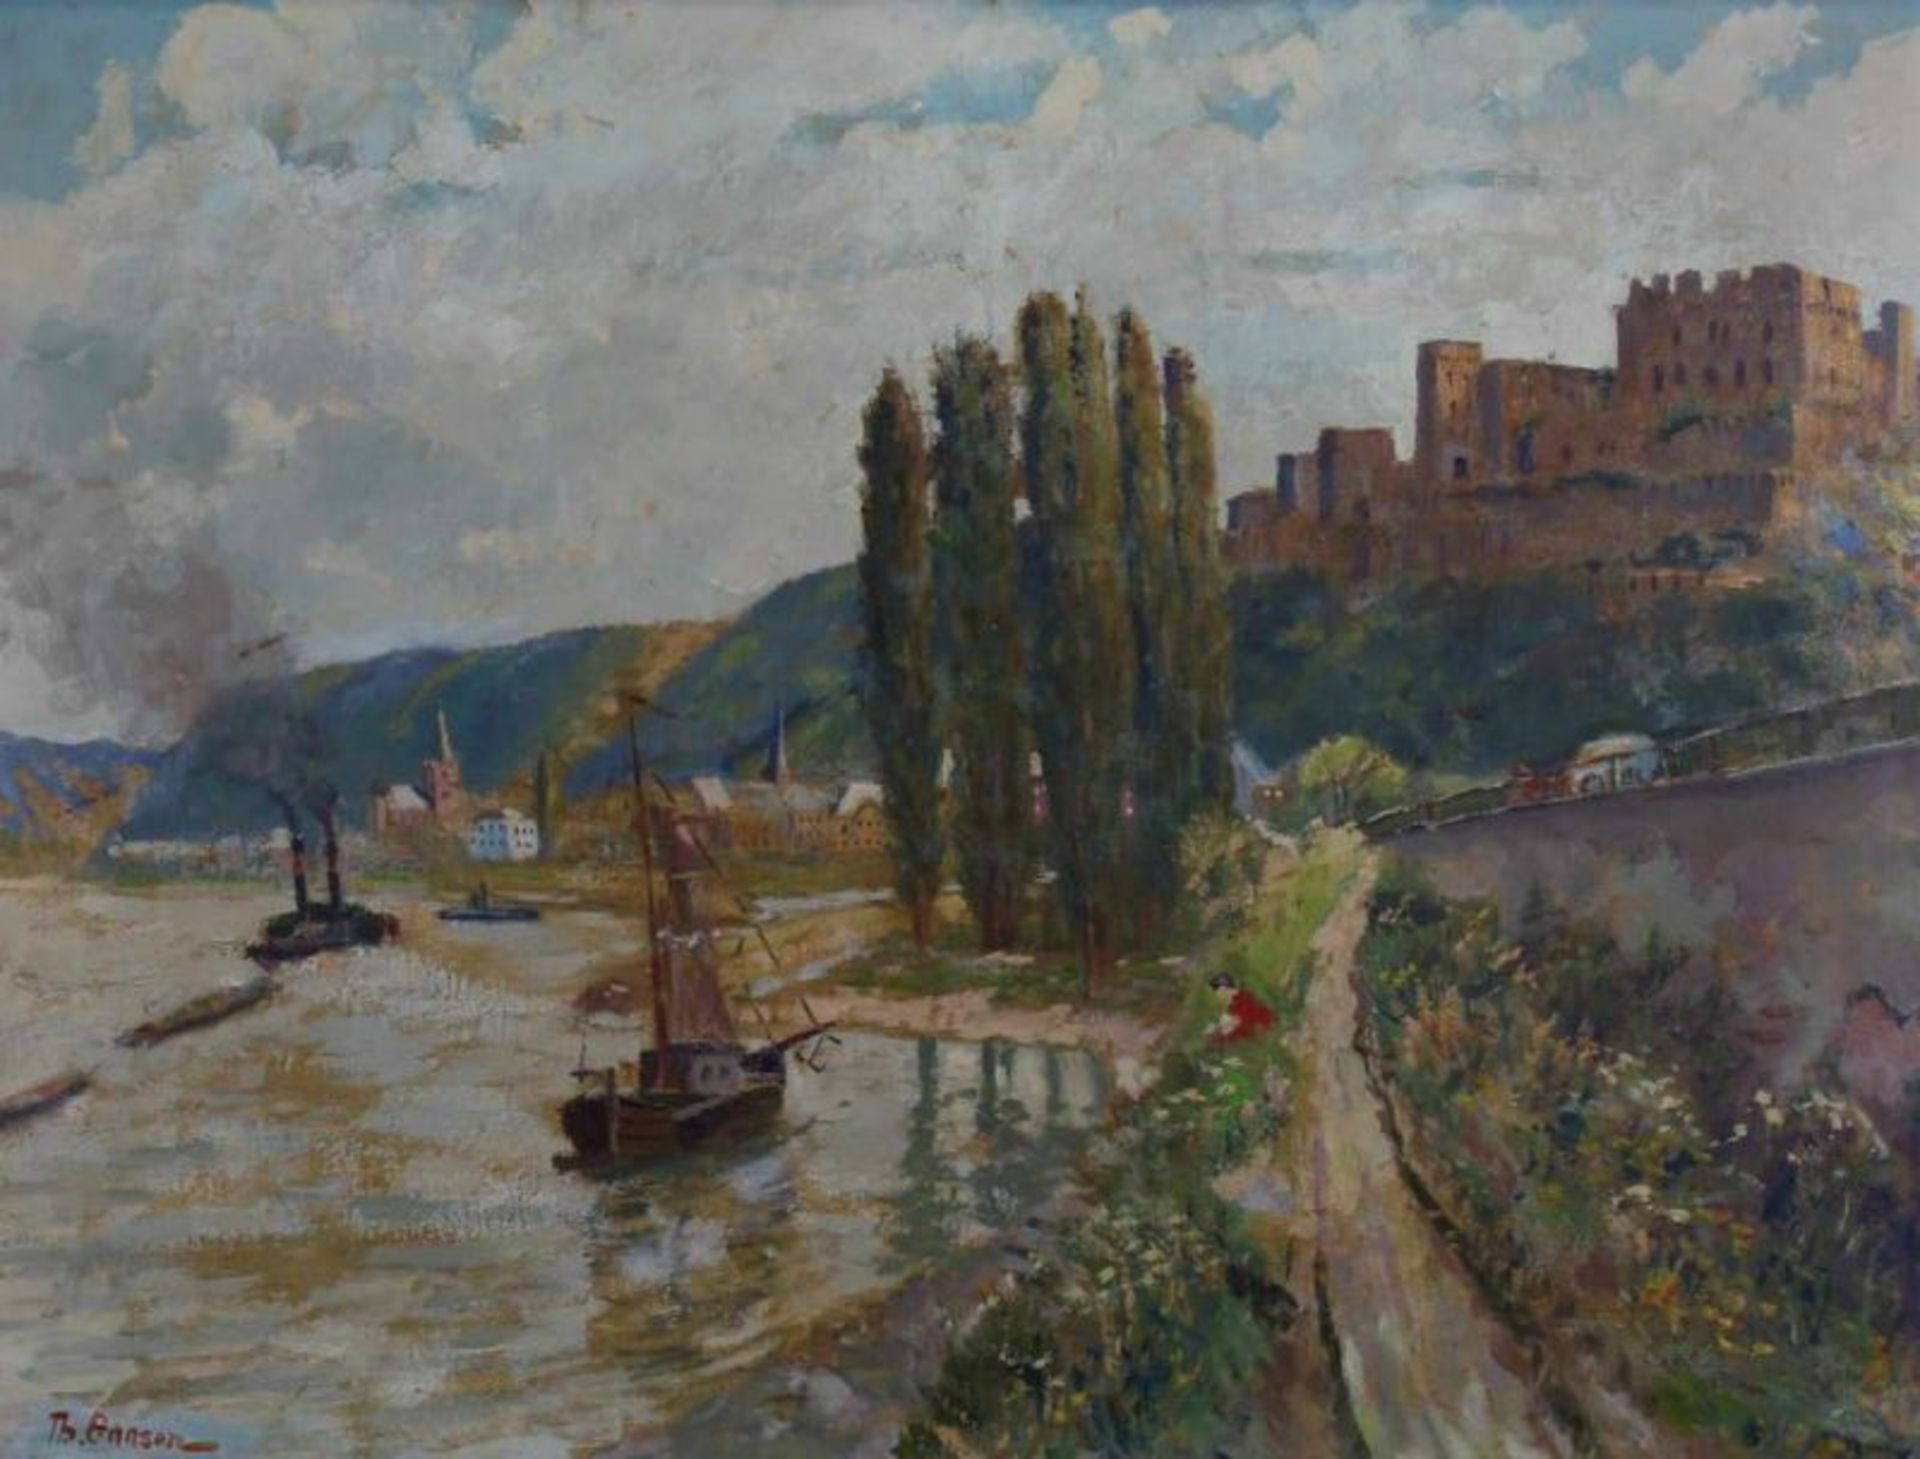 Gansen, Theo (1887 Lebach - 1956 Bonn, deutscher Maler, Aquarellist und Restaurator, studierte an